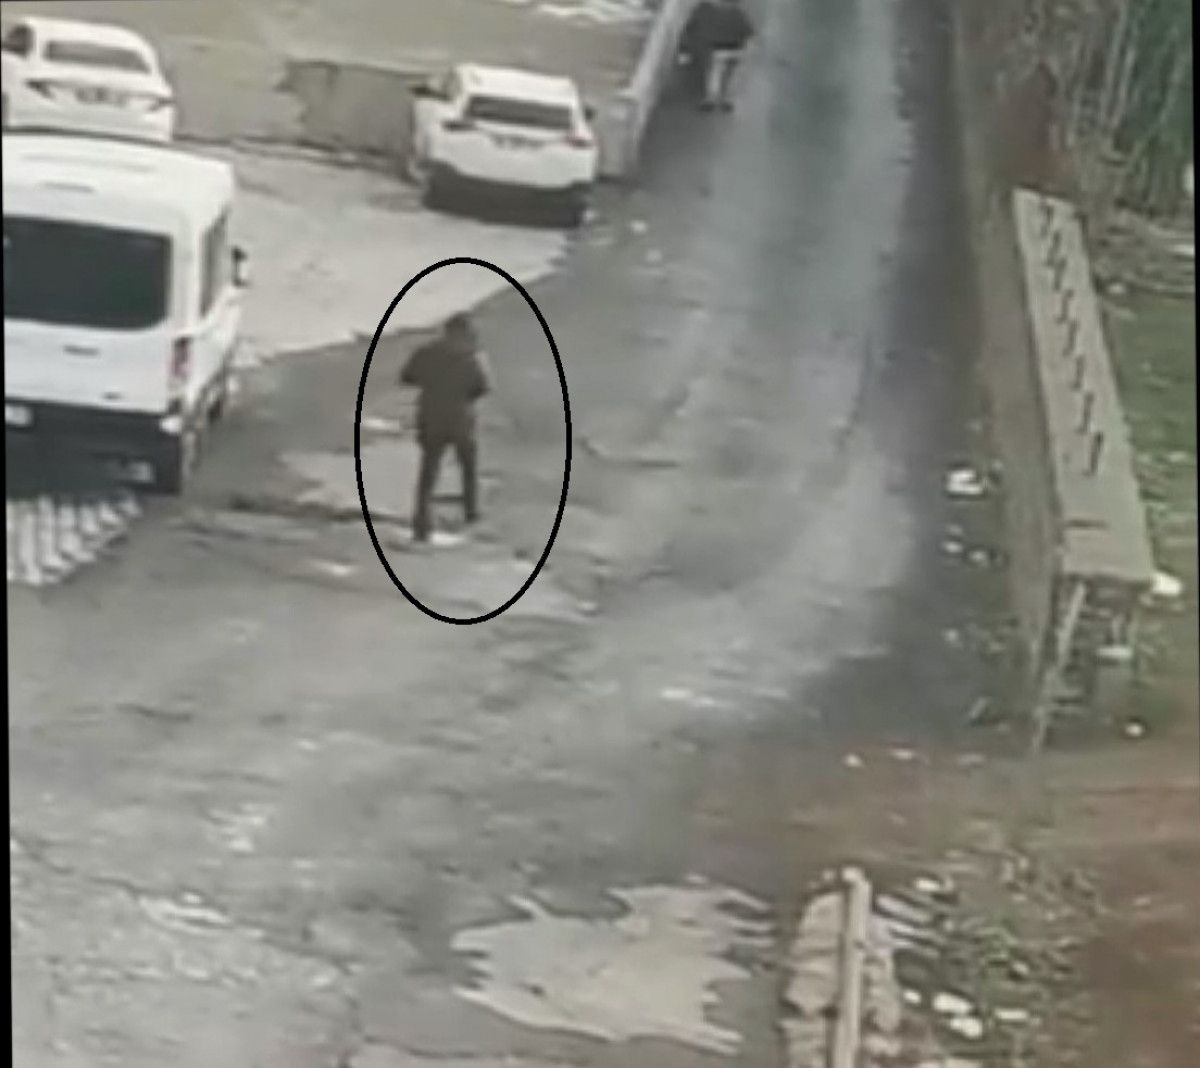 Diyarbakır da hastane önünde 2 kişiyi vuran şahıs tutuklandı #3